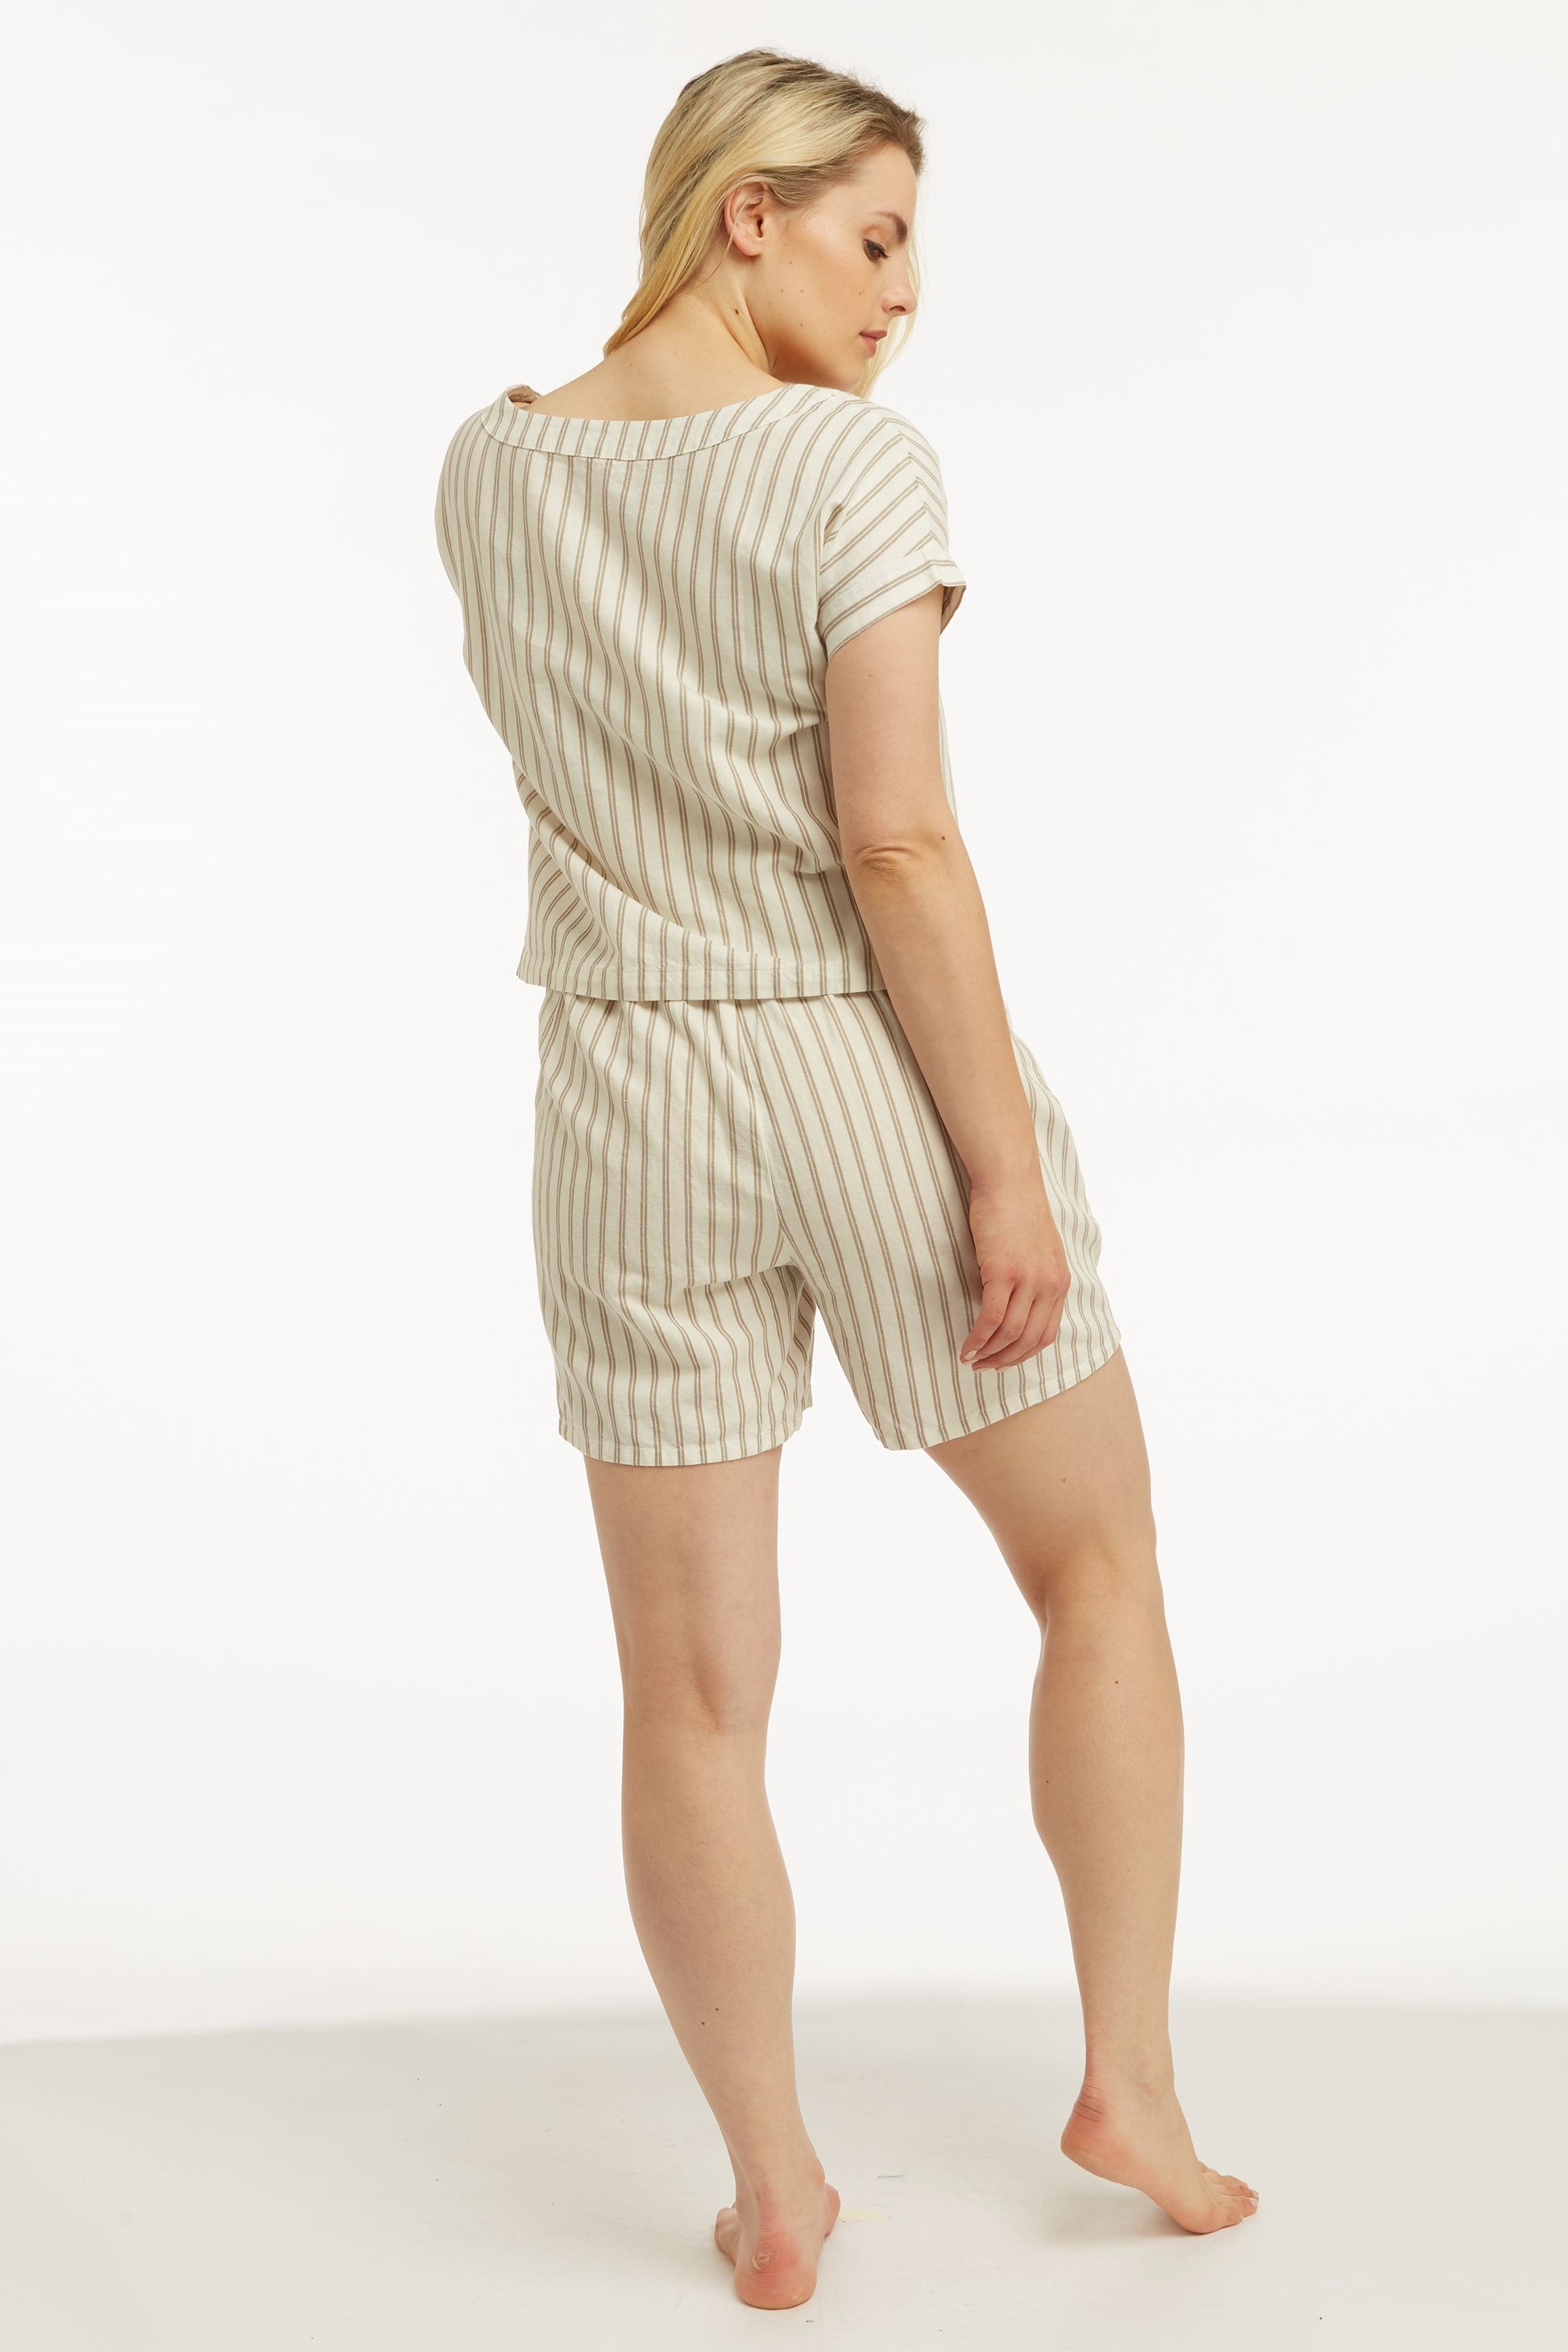 “Beyond Chic” Linen Short - Silver Stripe Shorts Berkanan Official 